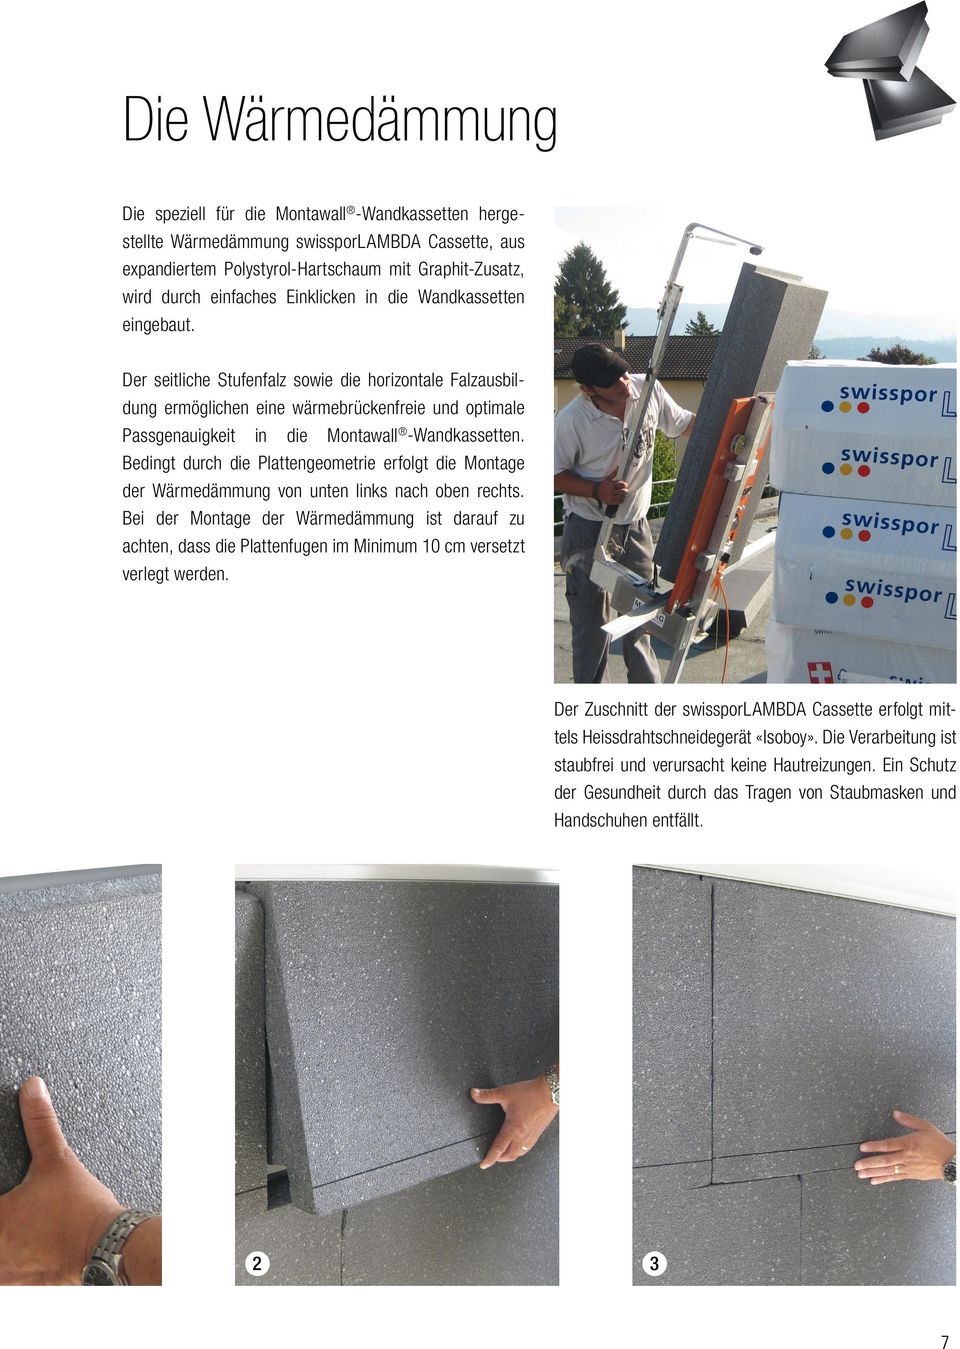 Der seitliche Stufenfalz sowie die horizontale Falzausbildung ermöglichen eine wärmebrückenfreie und optimale Passgenauigkeit in die Montawall -Wandkassetten.